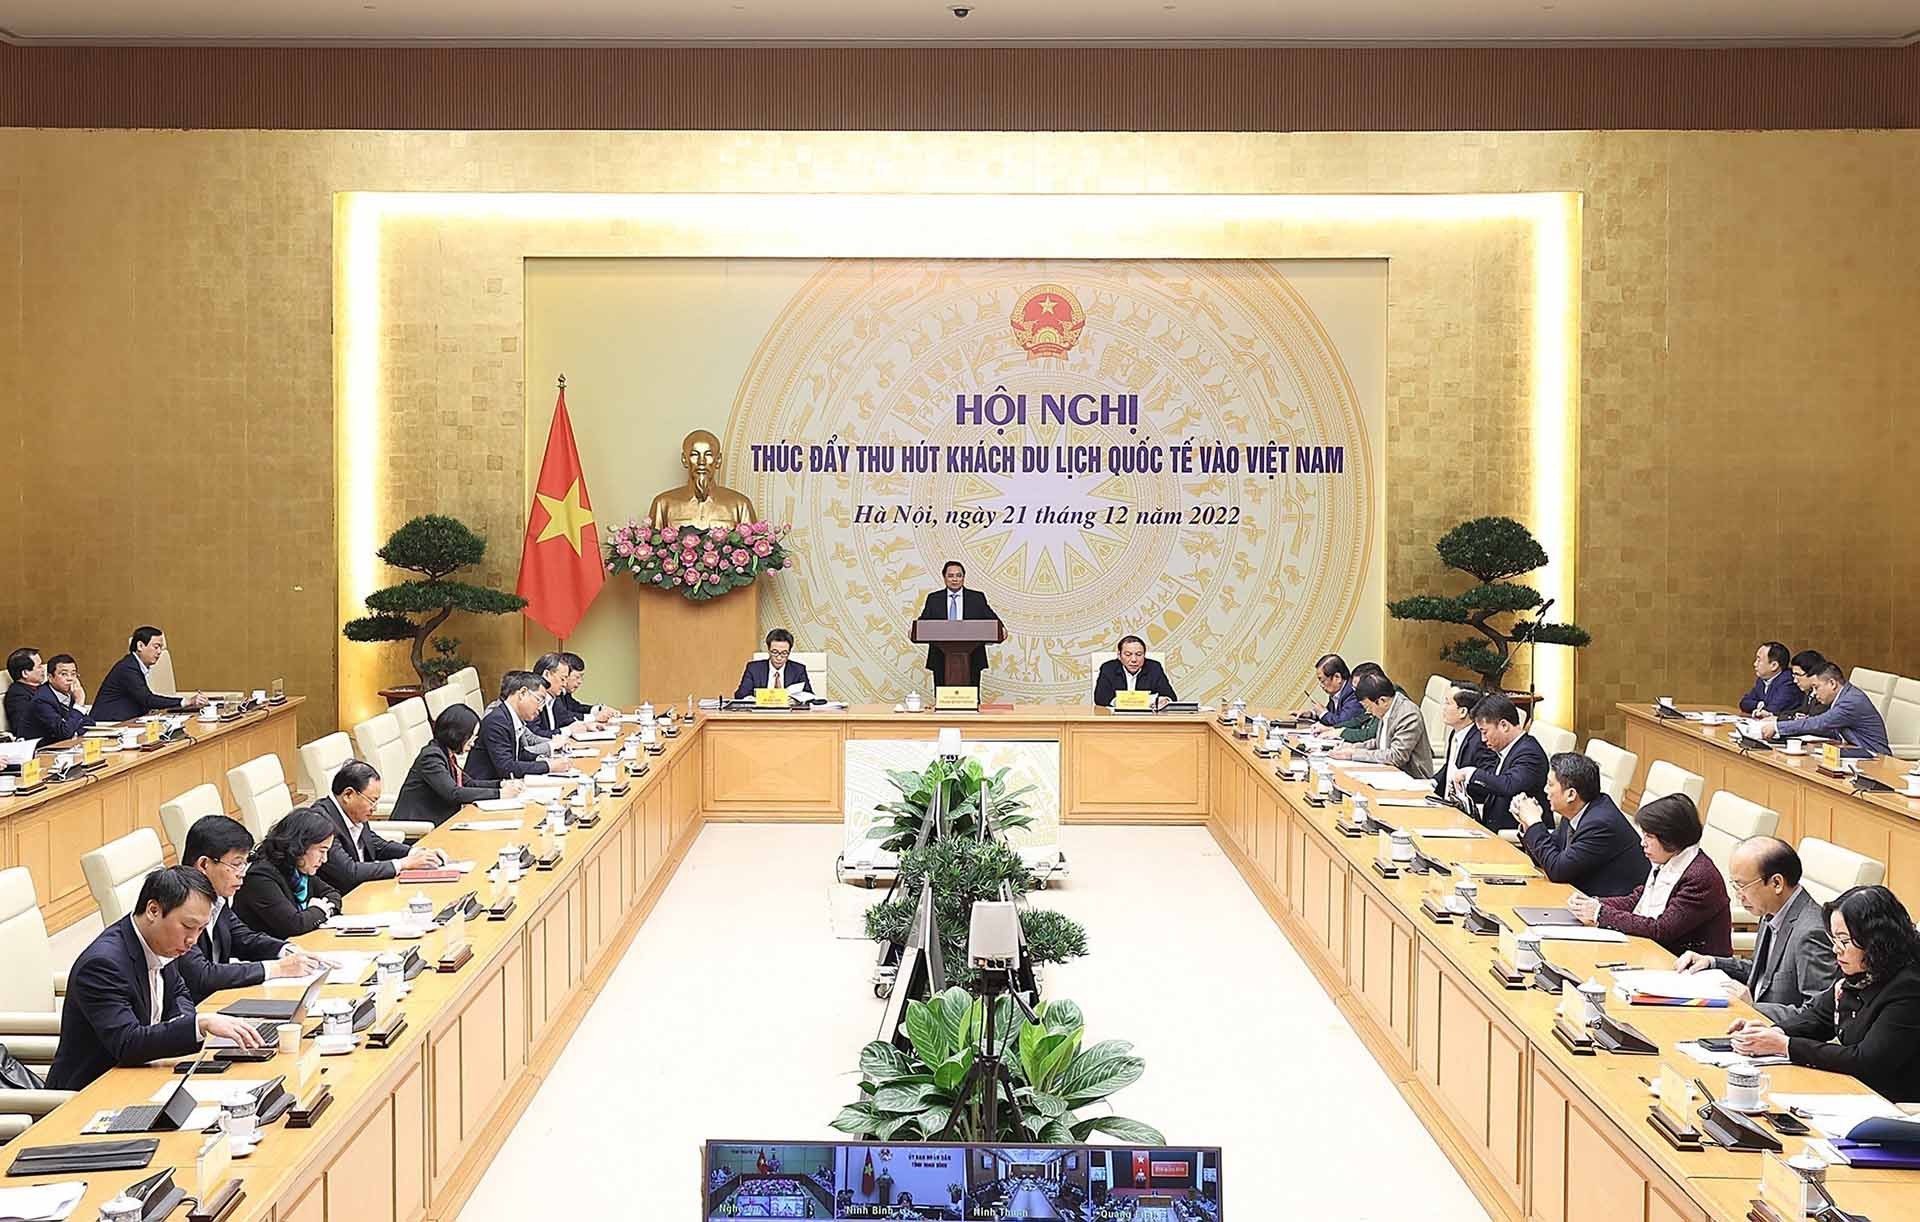 Thủ tướng Phạm Minh Chính chủ trì Hội nghị thúc đẩy thu hút khách du lịch quốc tế vào Việt Nam. (Nguồn: TTXVN)